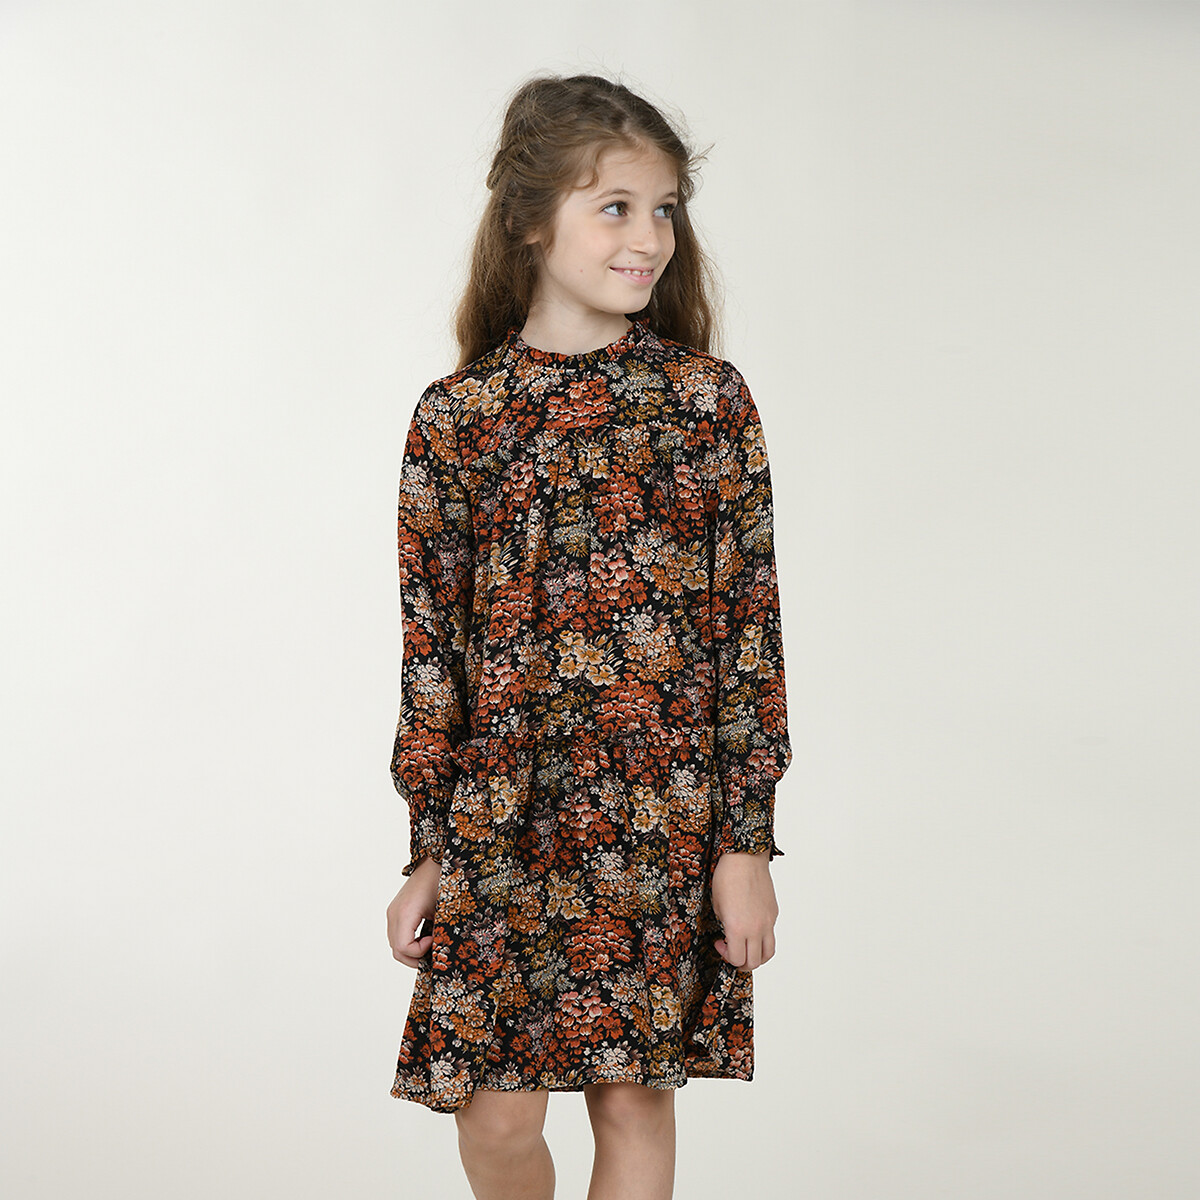 Платье La Redoute С длинными рукавами 4-14 лет 12/14 лет - 150/156 см другие, размер 12/14 лет - 150/156 см